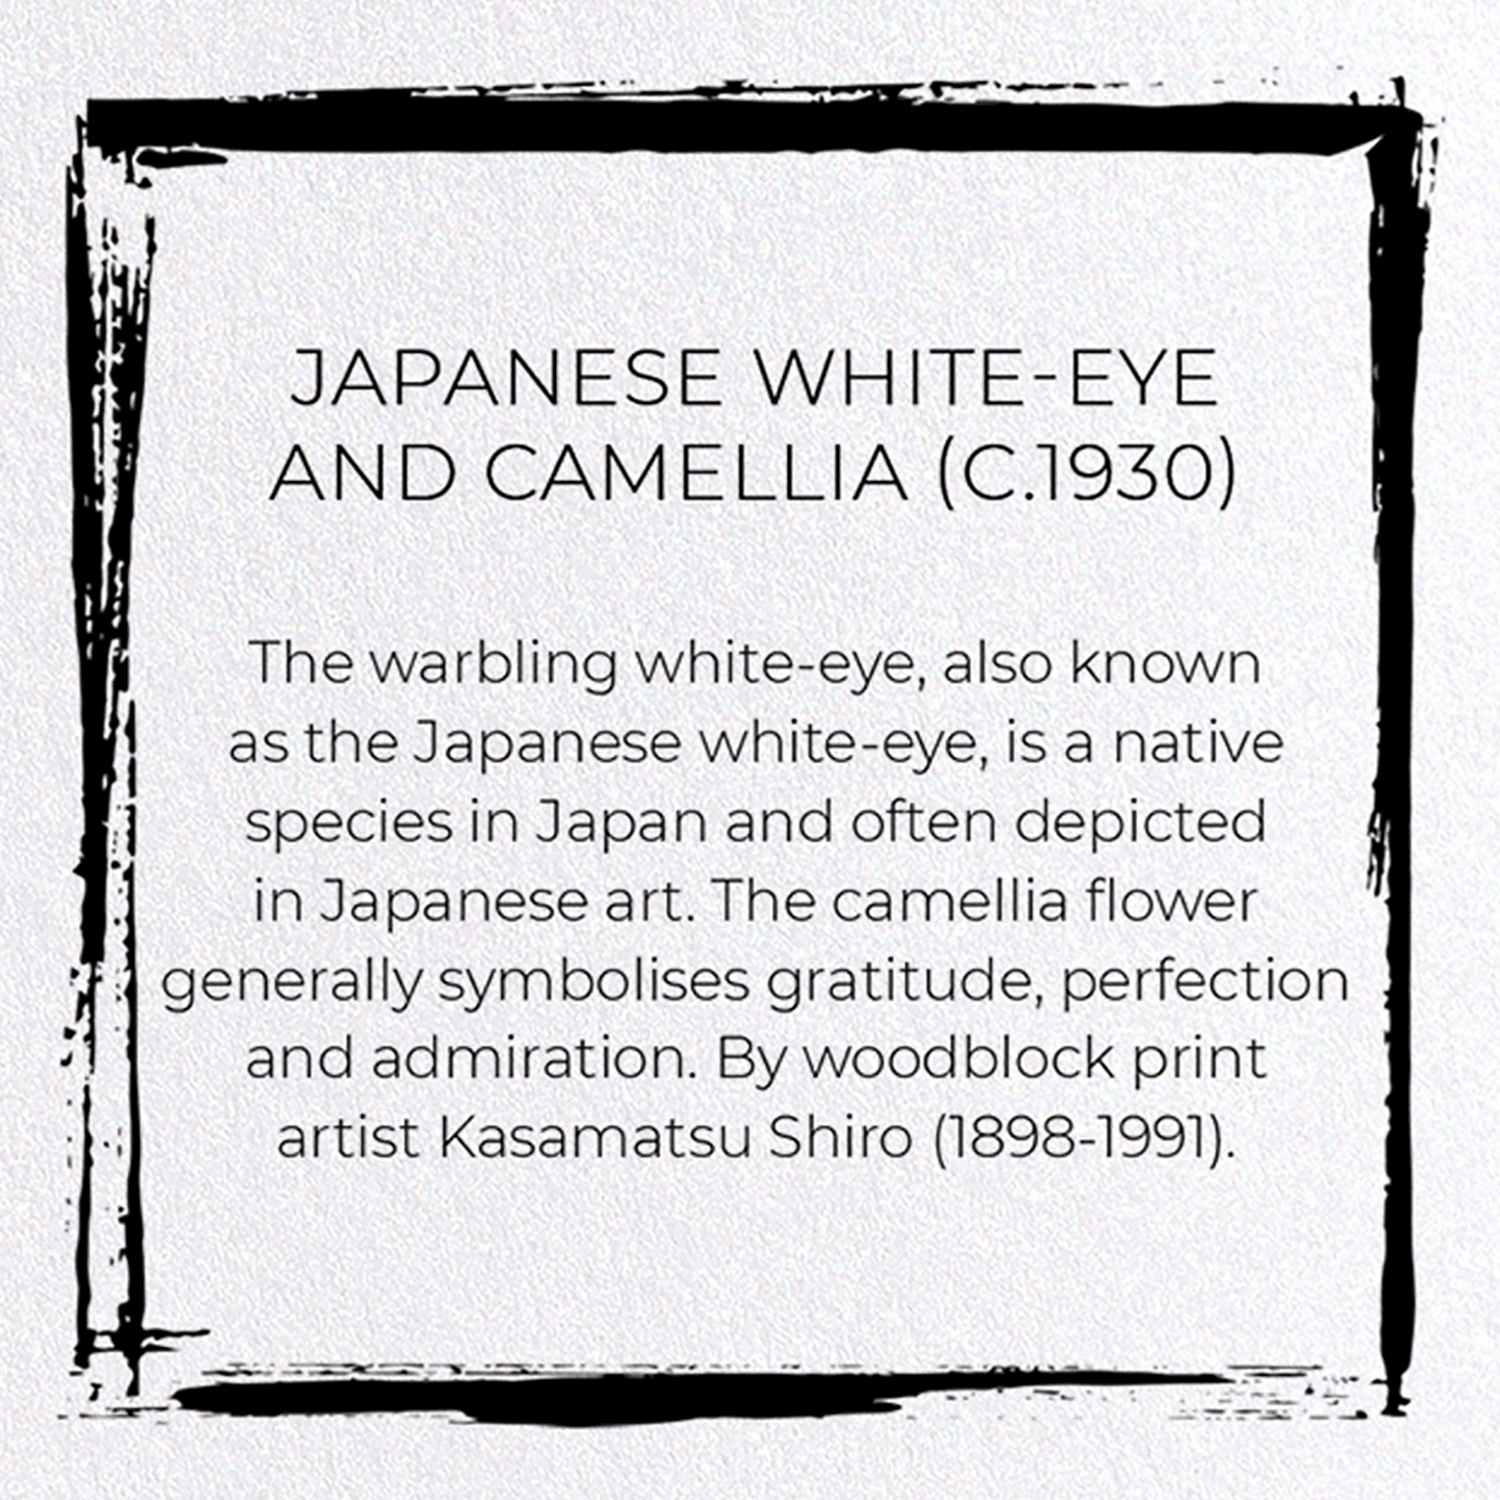 JAPANESE WHITE-EYE AND CAMELLIA (C.1930)